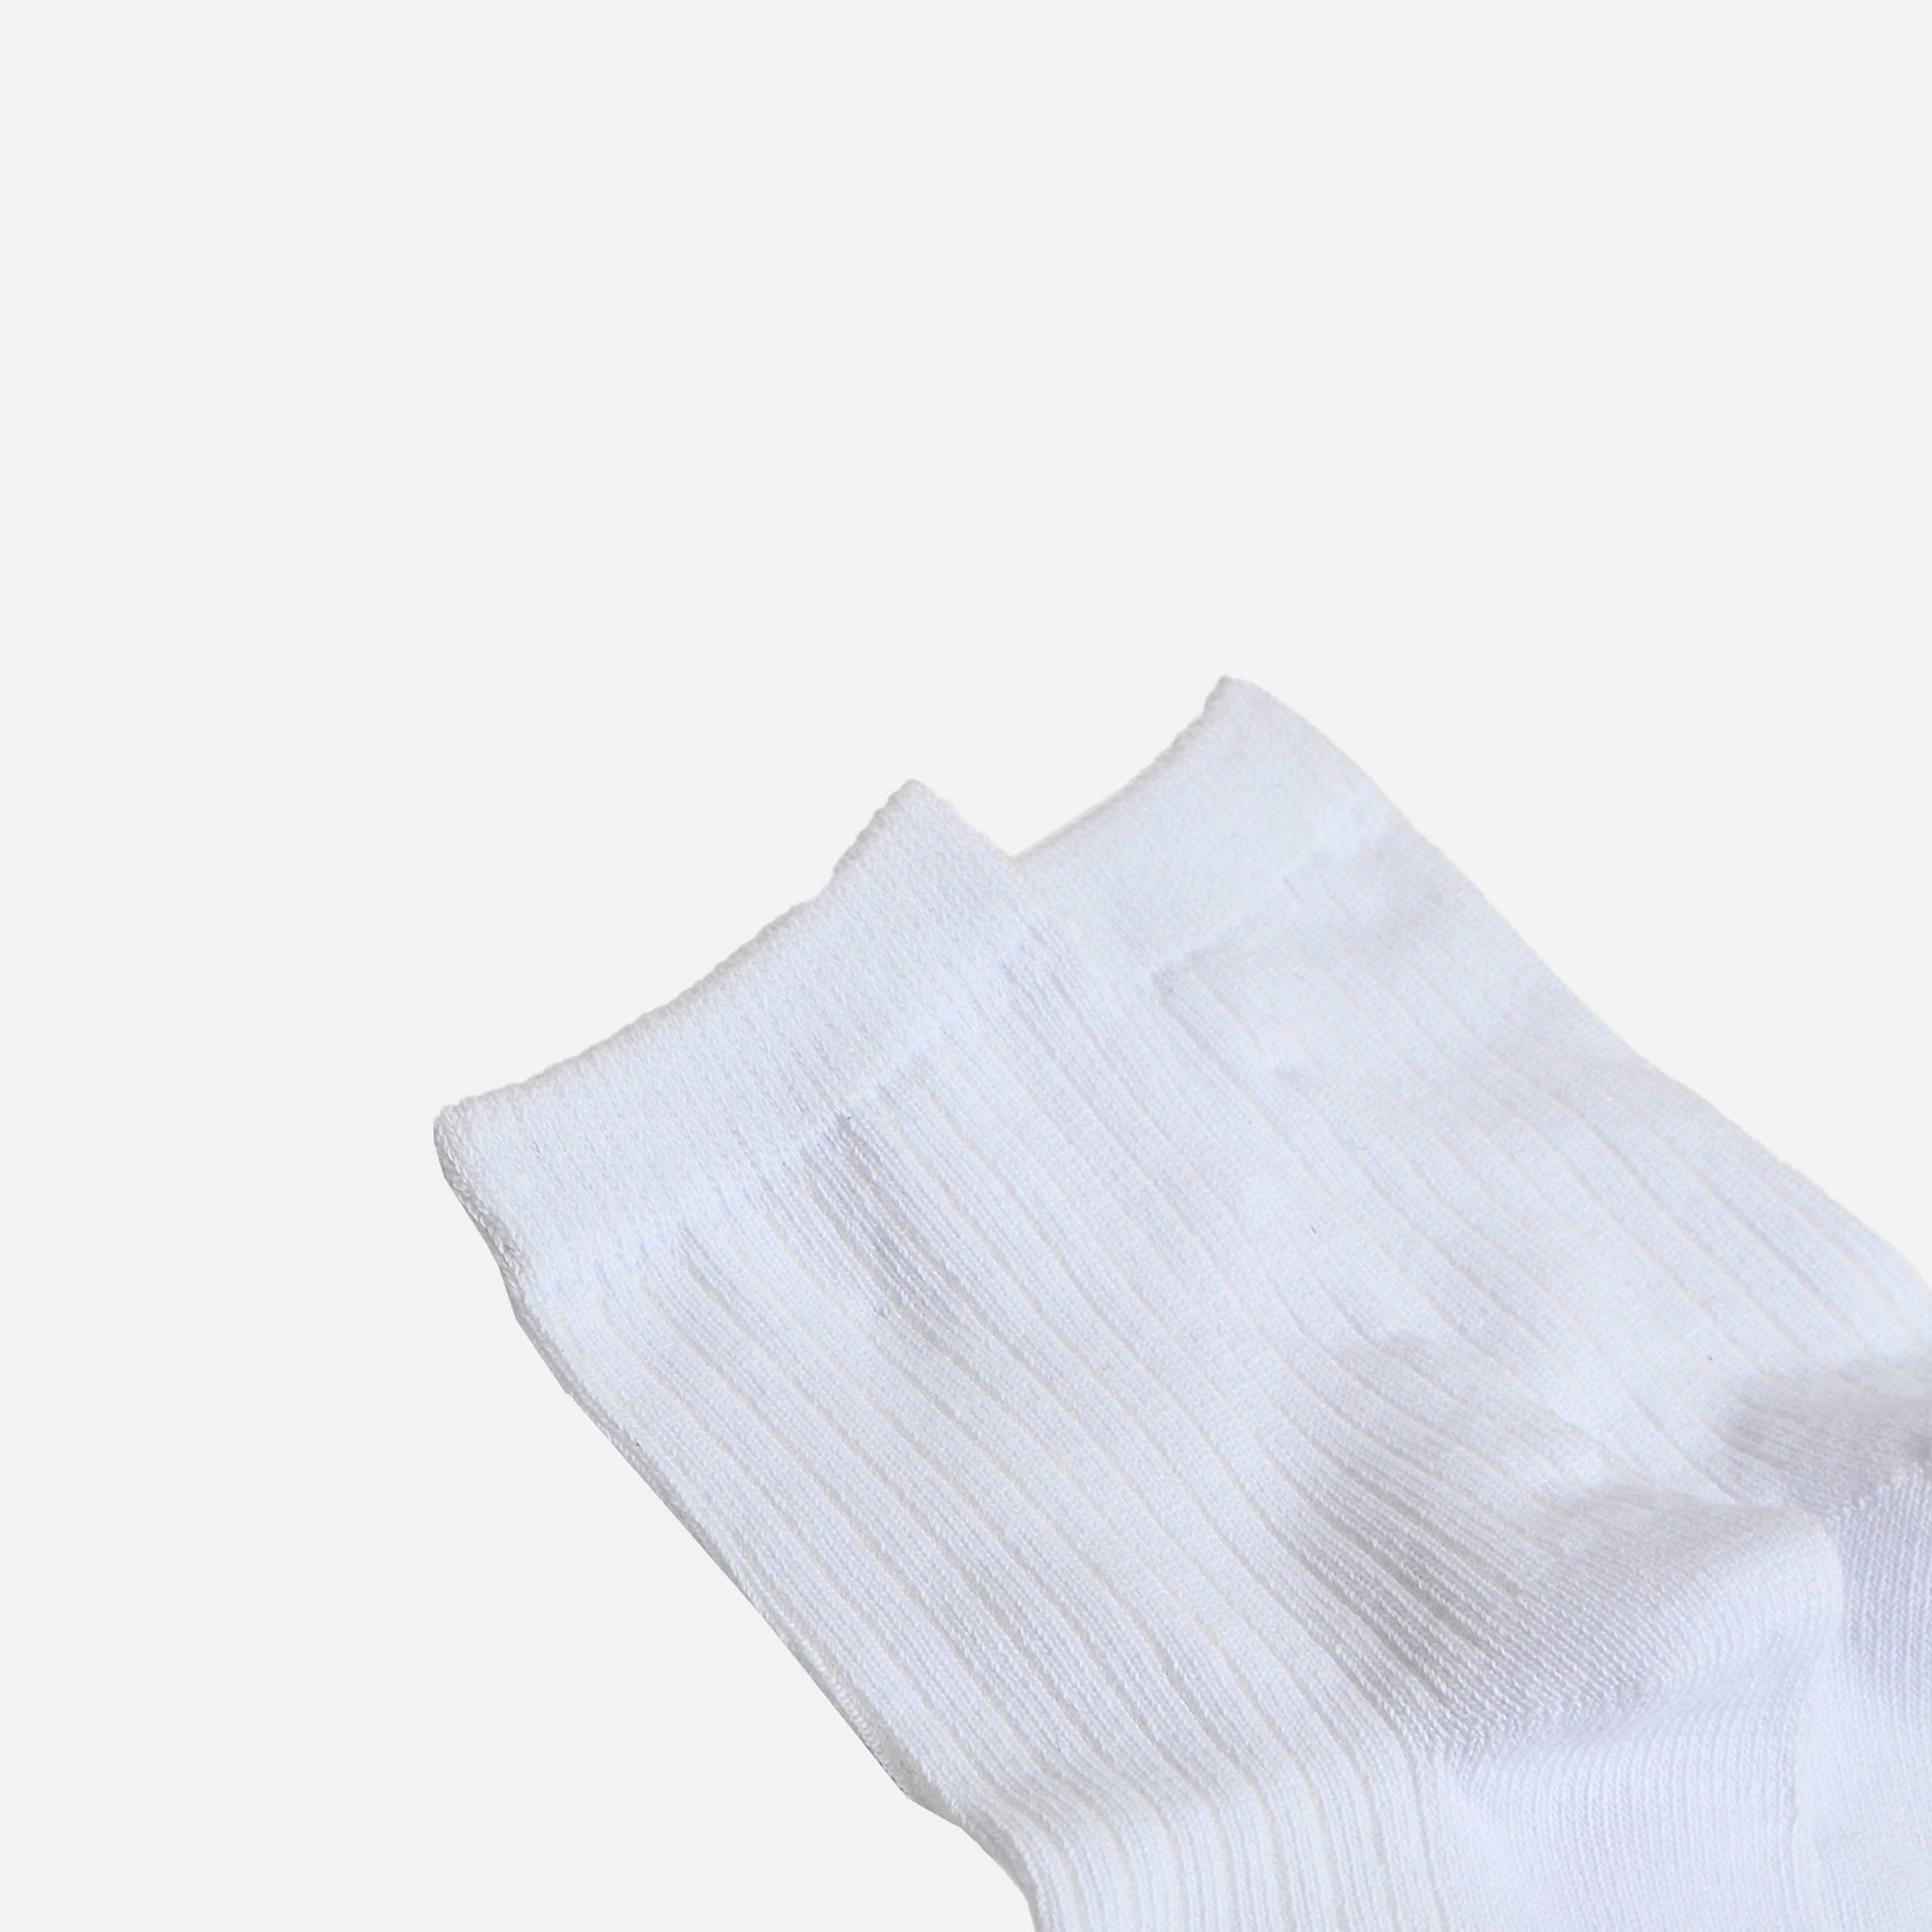 Plain white socks for children